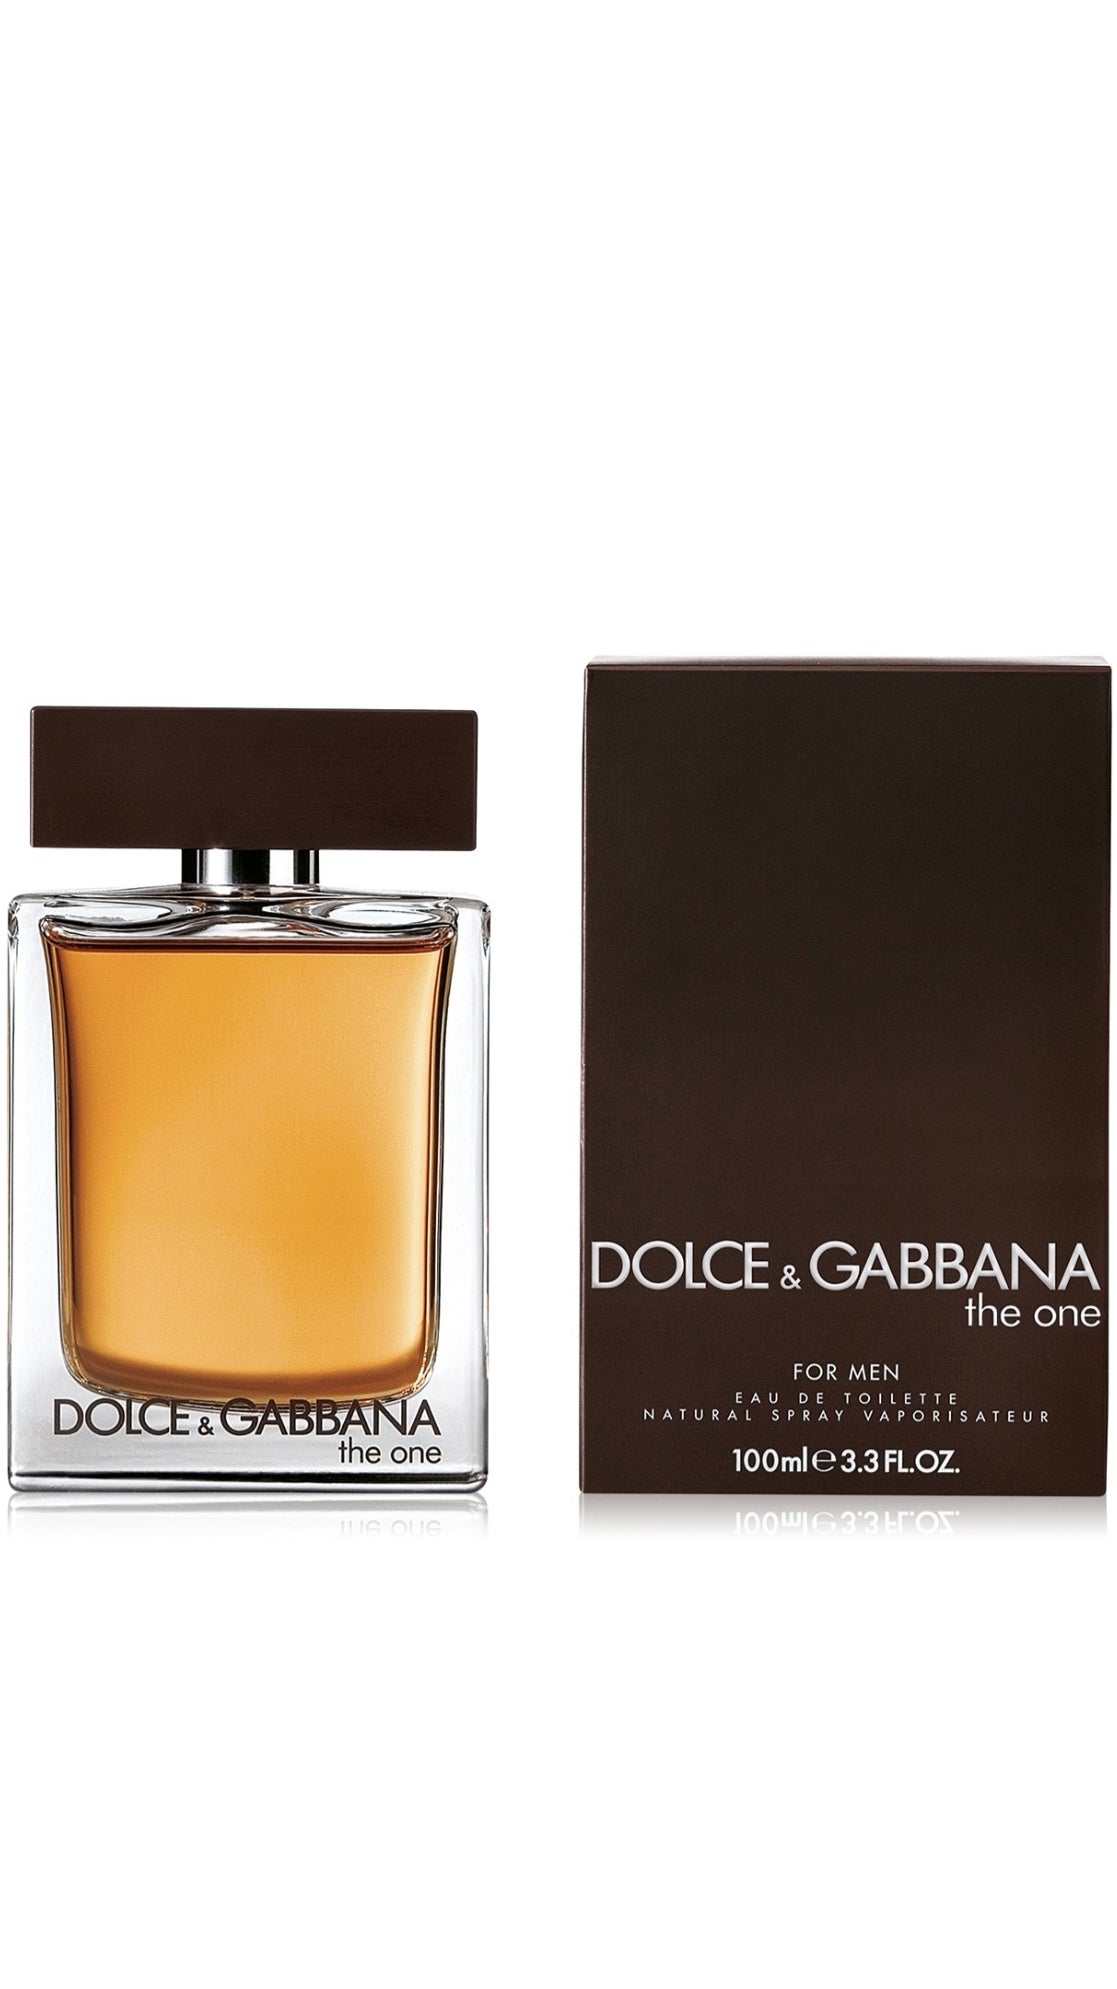 Mens Dolce & Gabbana The One Eau de Toilette Fragrance Collection